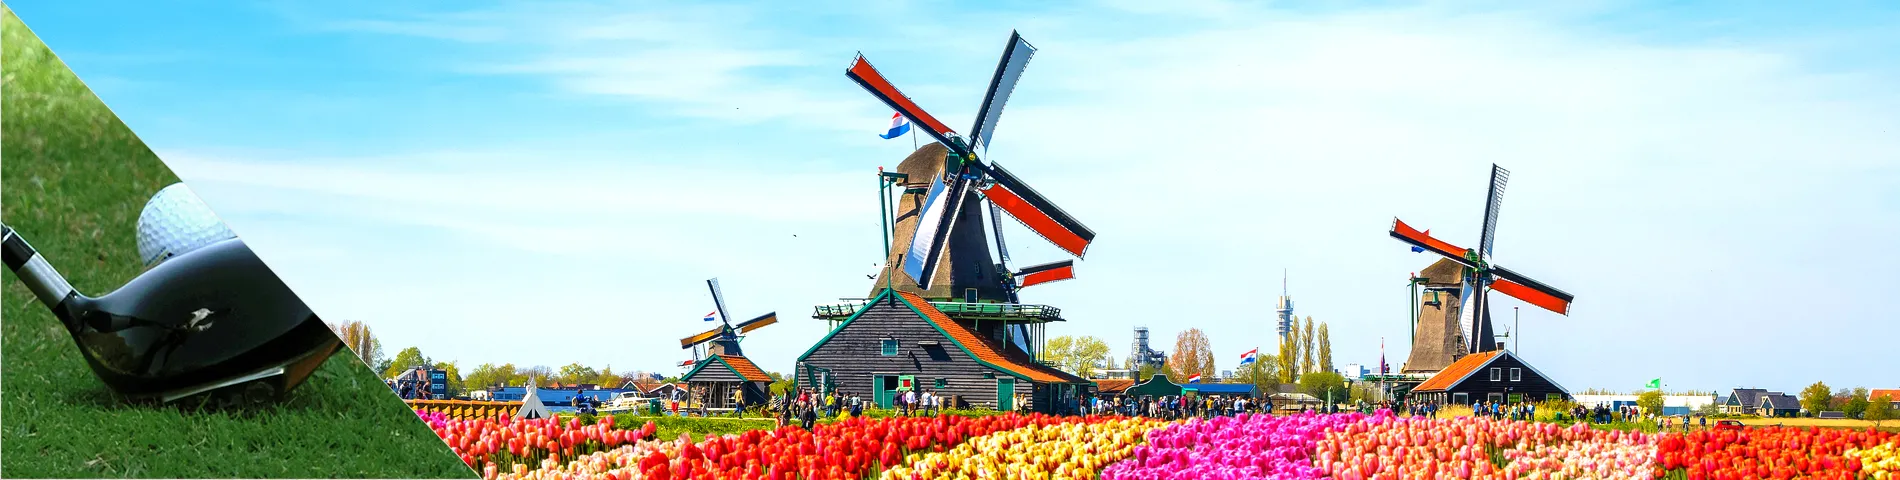 هولندا - تعلم اللغة والجولف